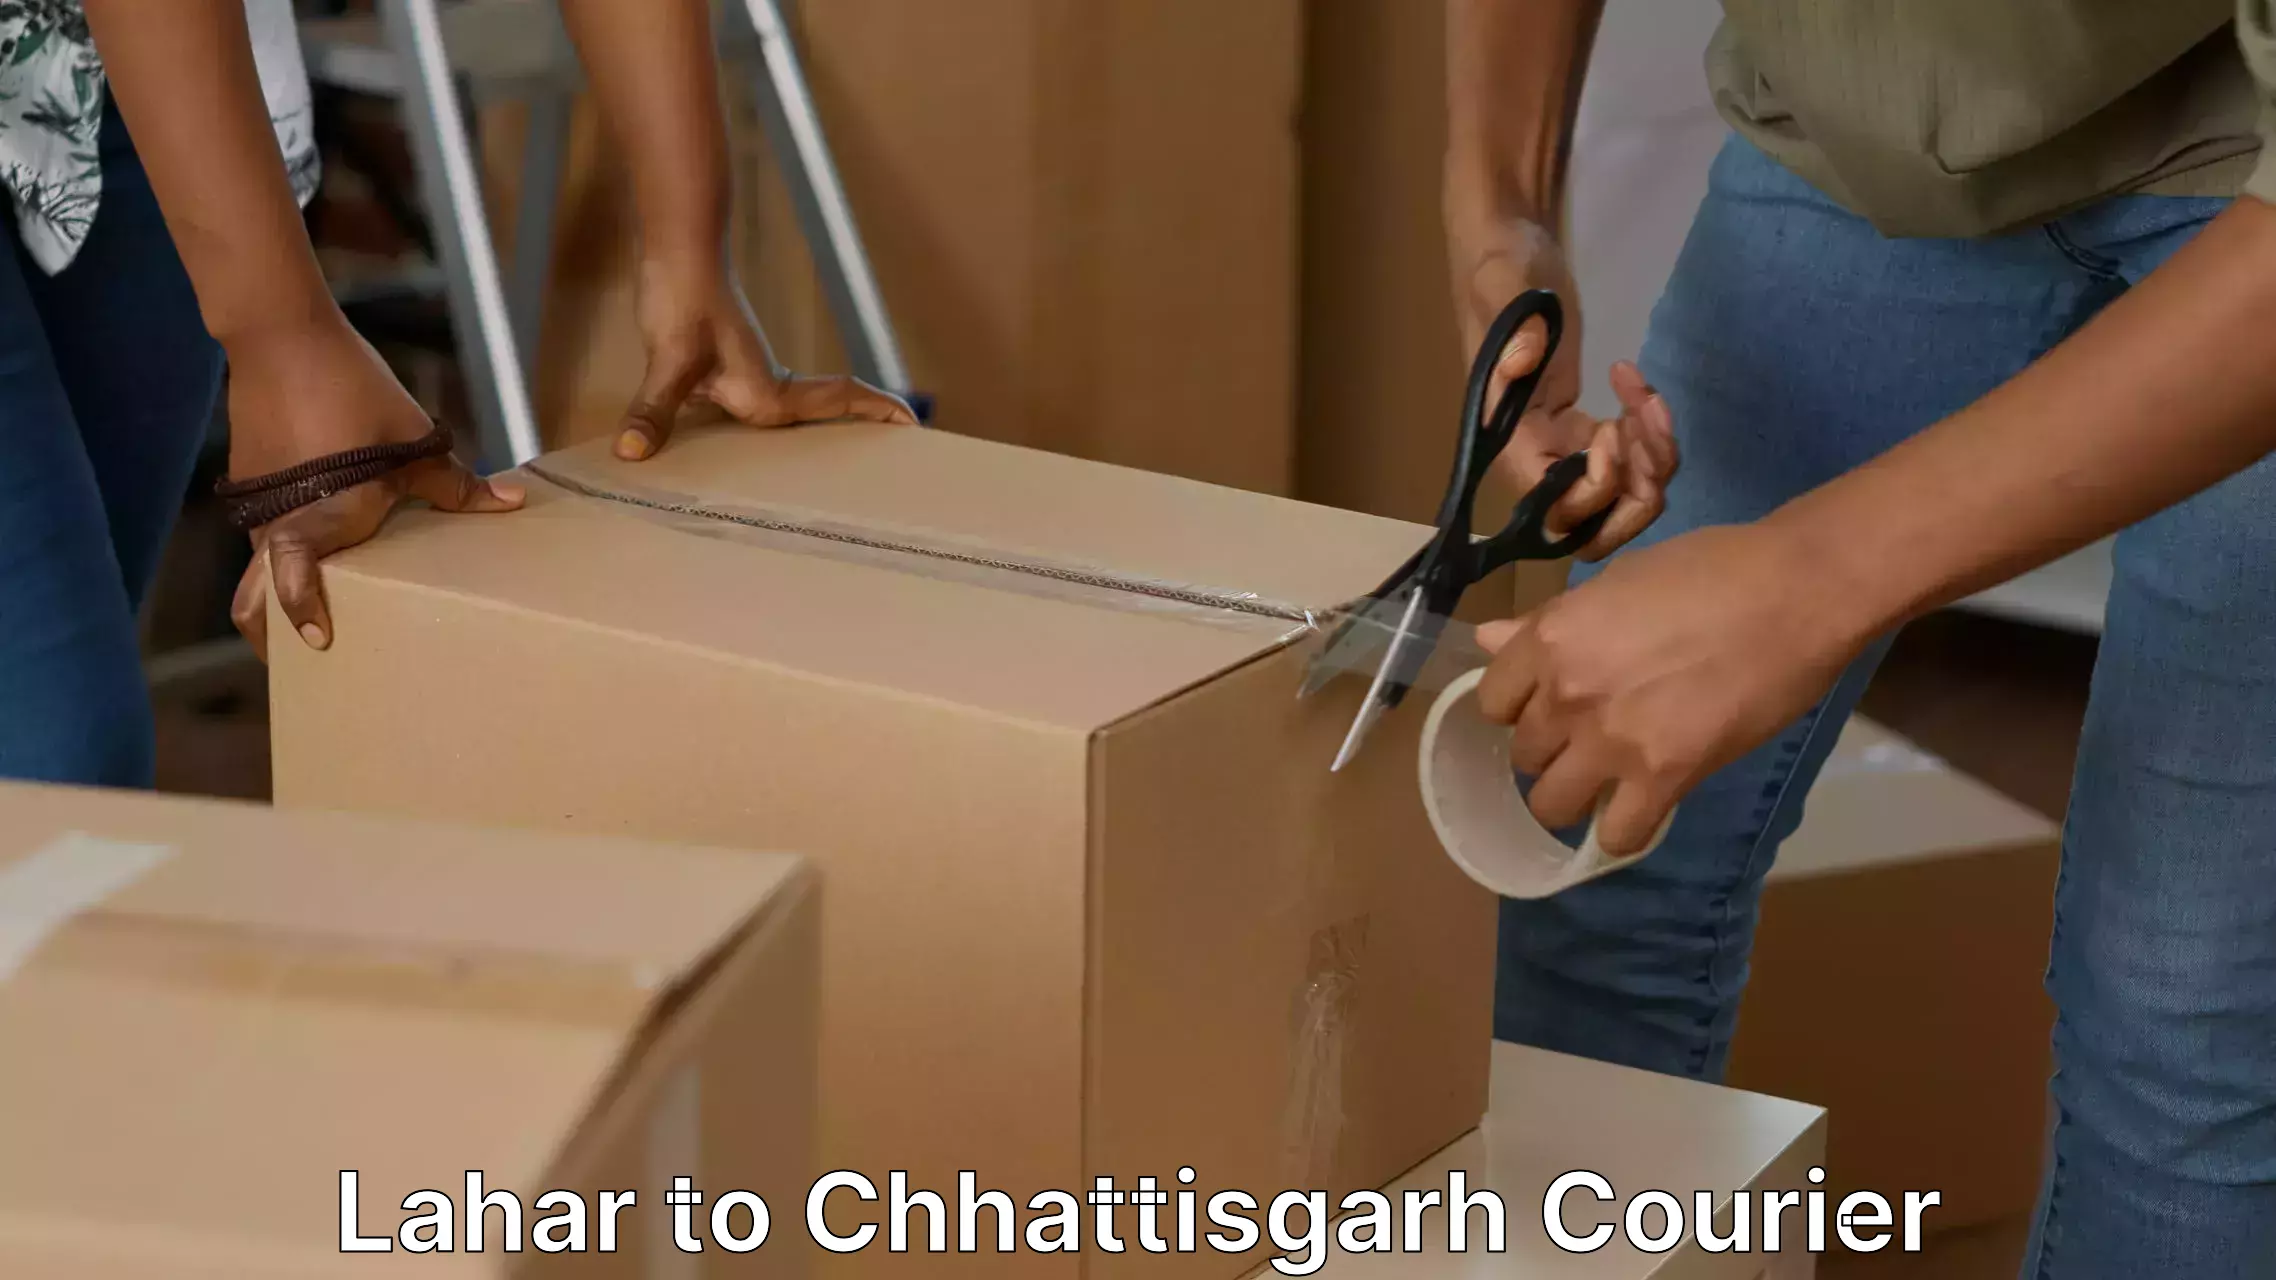 Full-service household moving Lahar to Chhattisgarh